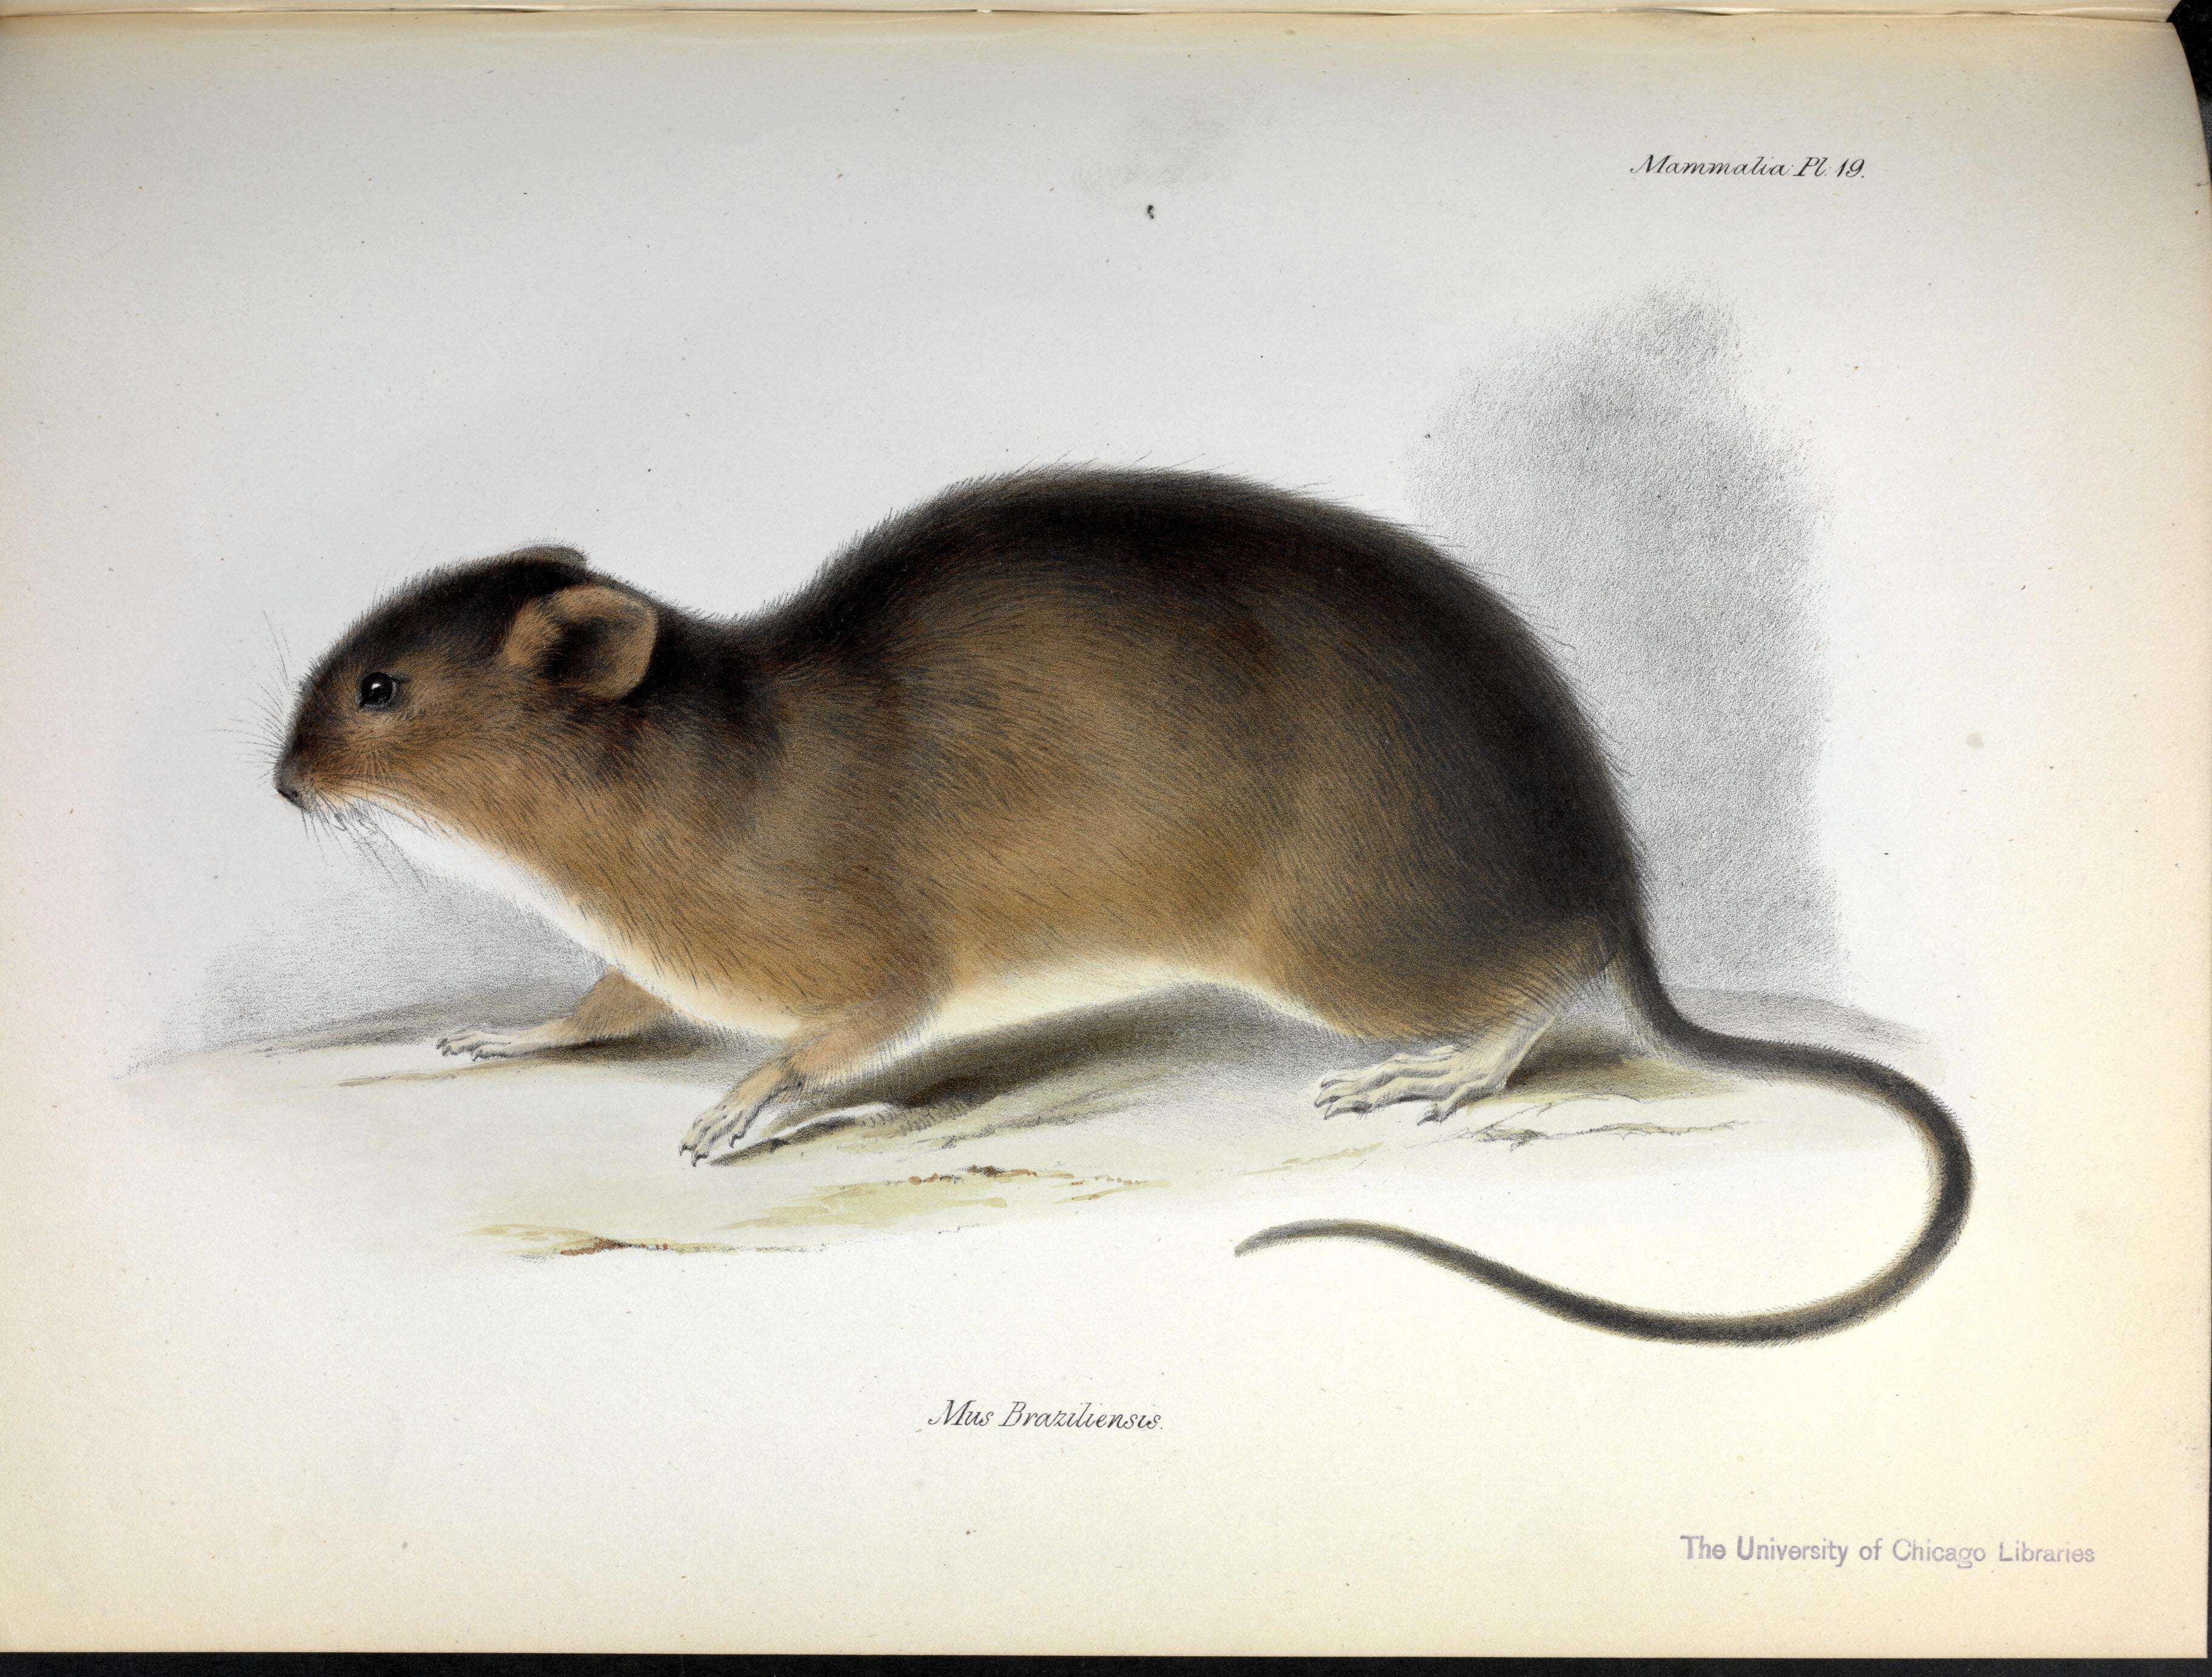 Image of Brazilian Marsh Rat